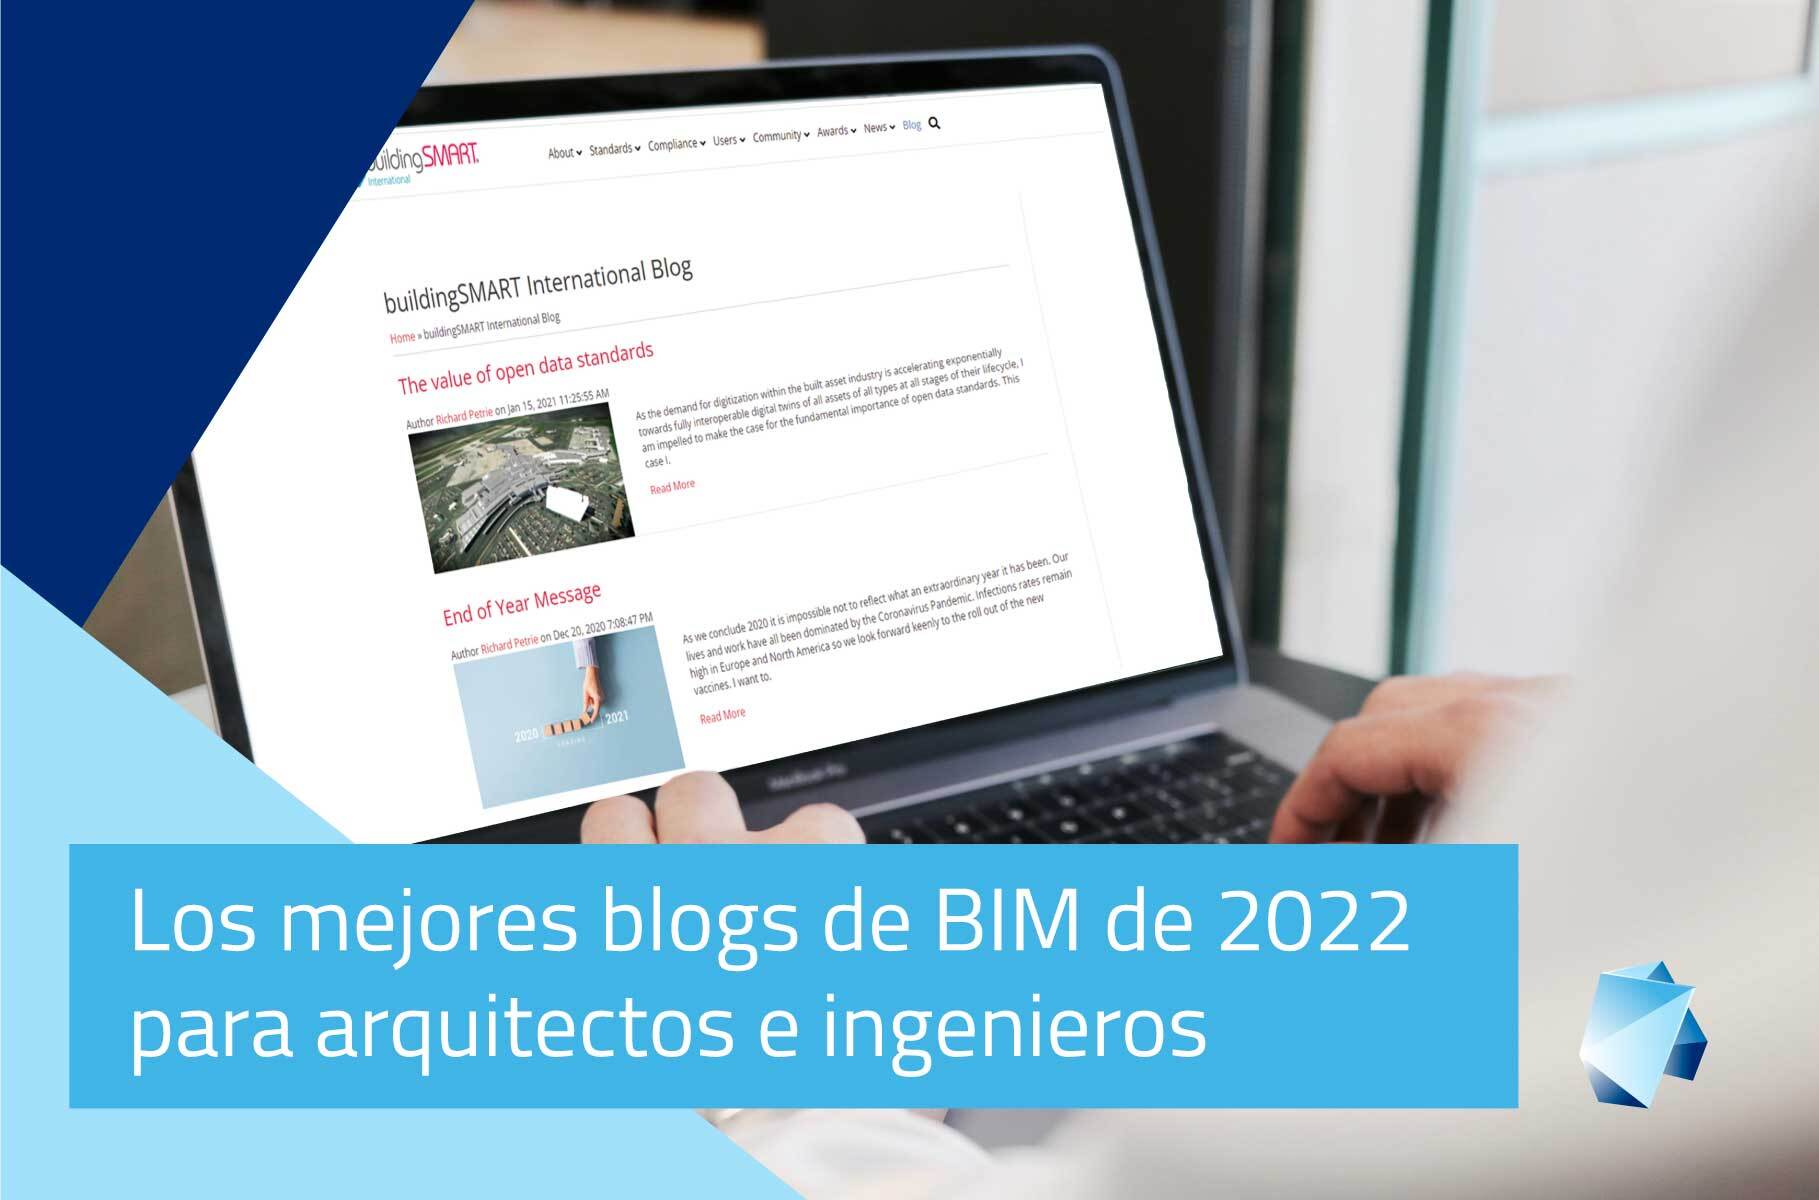 Los mejores Blogs de BIM del 2022 para arquitectos e ingenieros